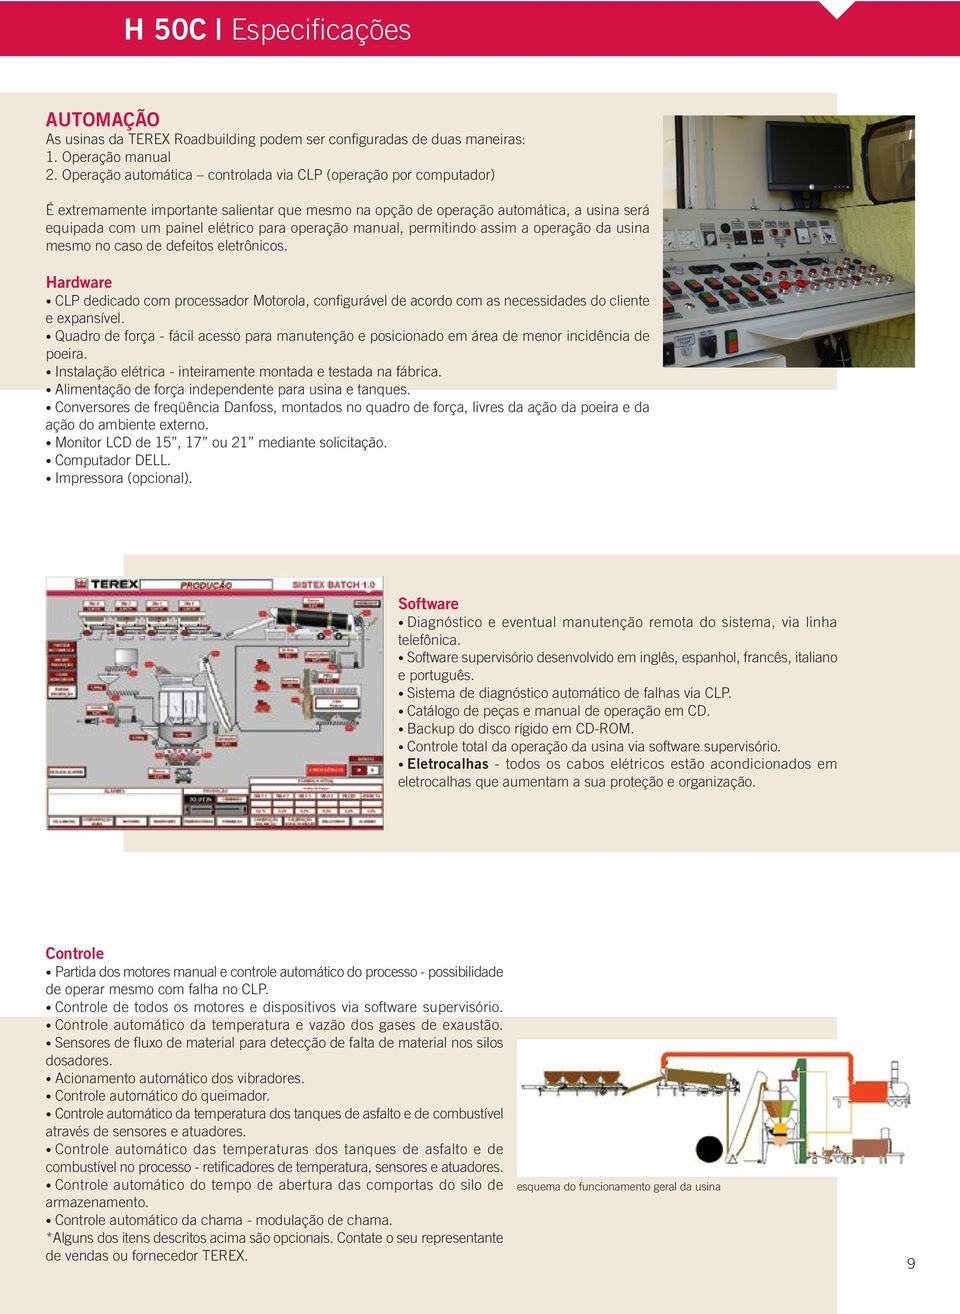 operação manual, permitindo assim a operação da usina mesmo no caso de defeitos eletrônicos.